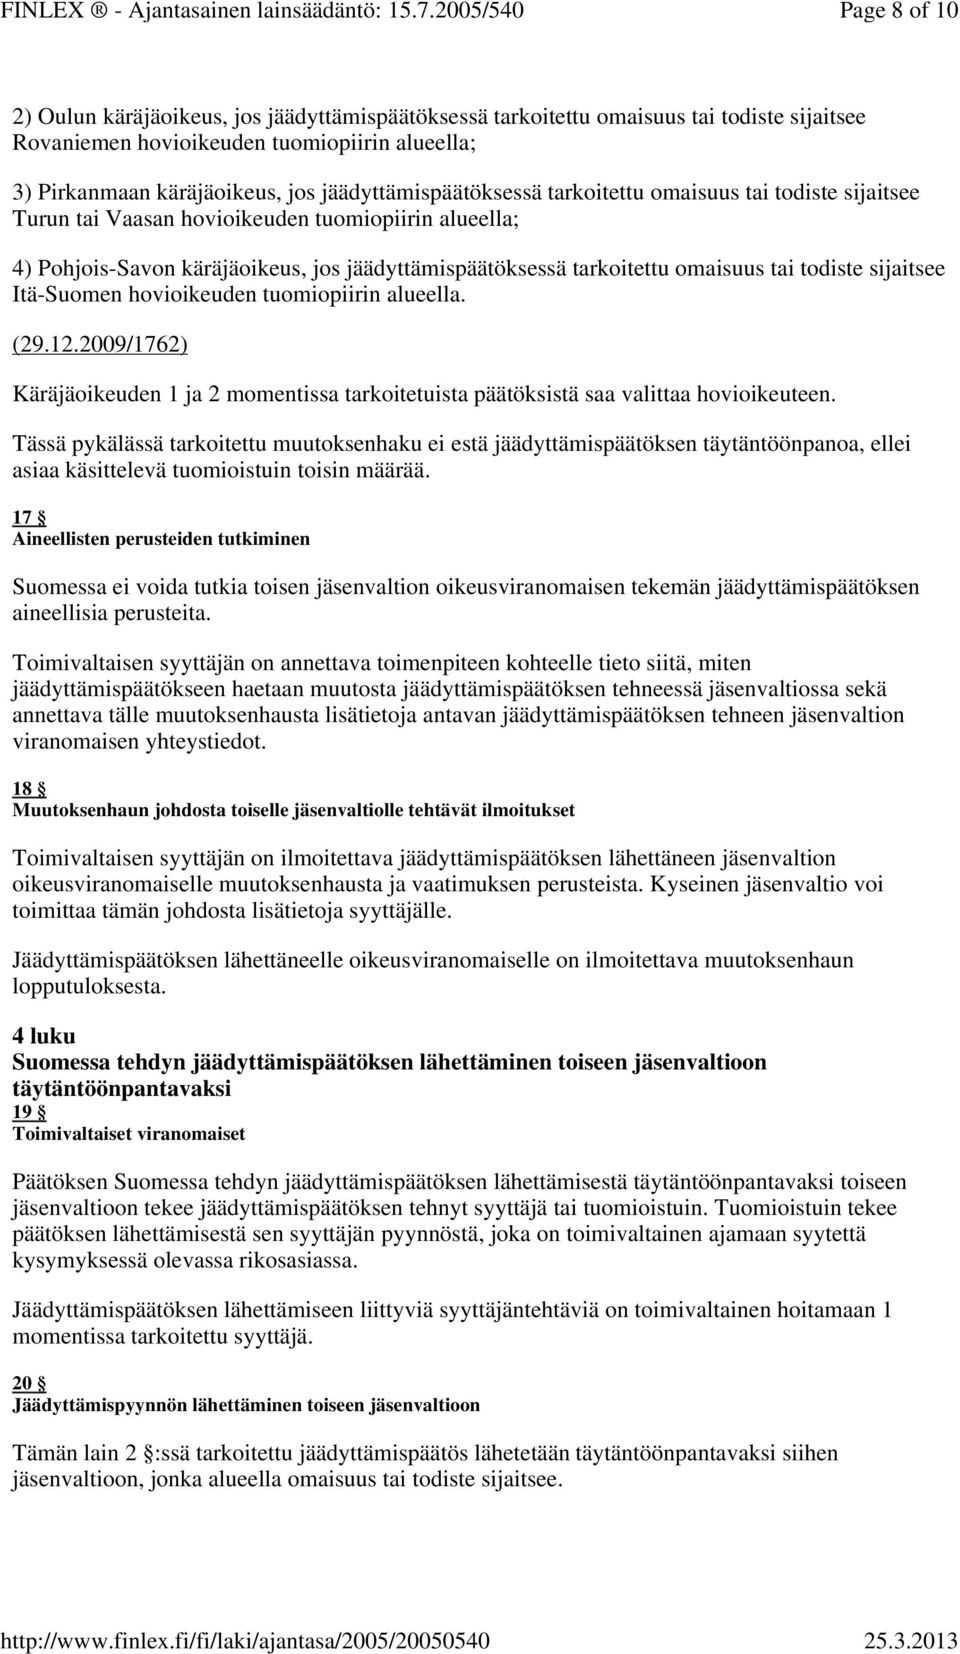 tai todiste sijaitsee Itä-Suomen hovioikeuden tuomiopiirin alueella. (29.12.2009/1762) Käräjäoikeuden 1 ja 2 momentissa tarkoitetuista päätöksistä saa valittaa hovioikeuteen.